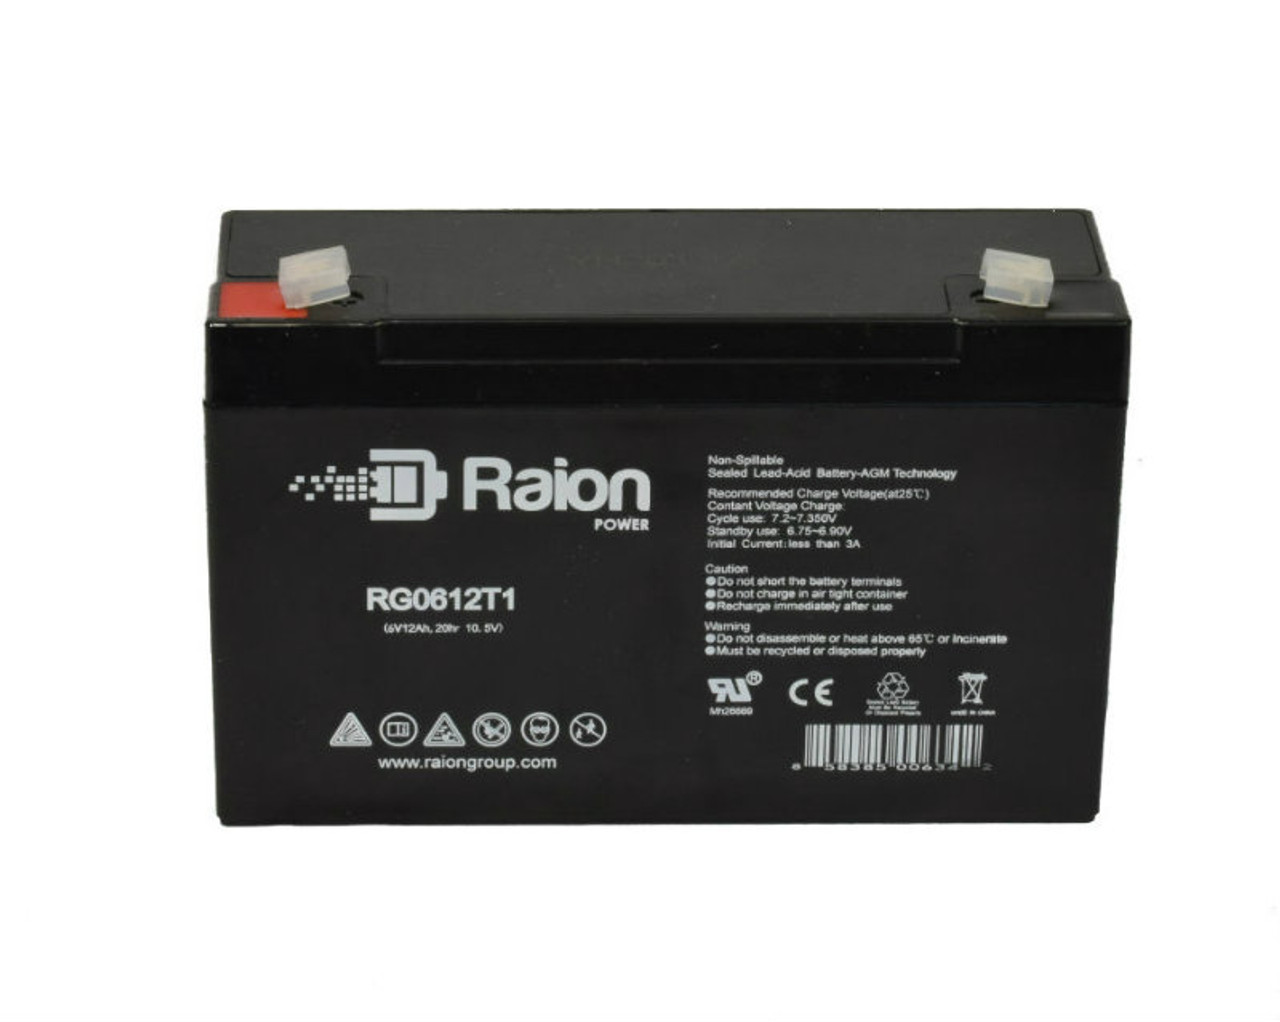 Raion Power RG06120T1 SLA Battery for Elan 1660